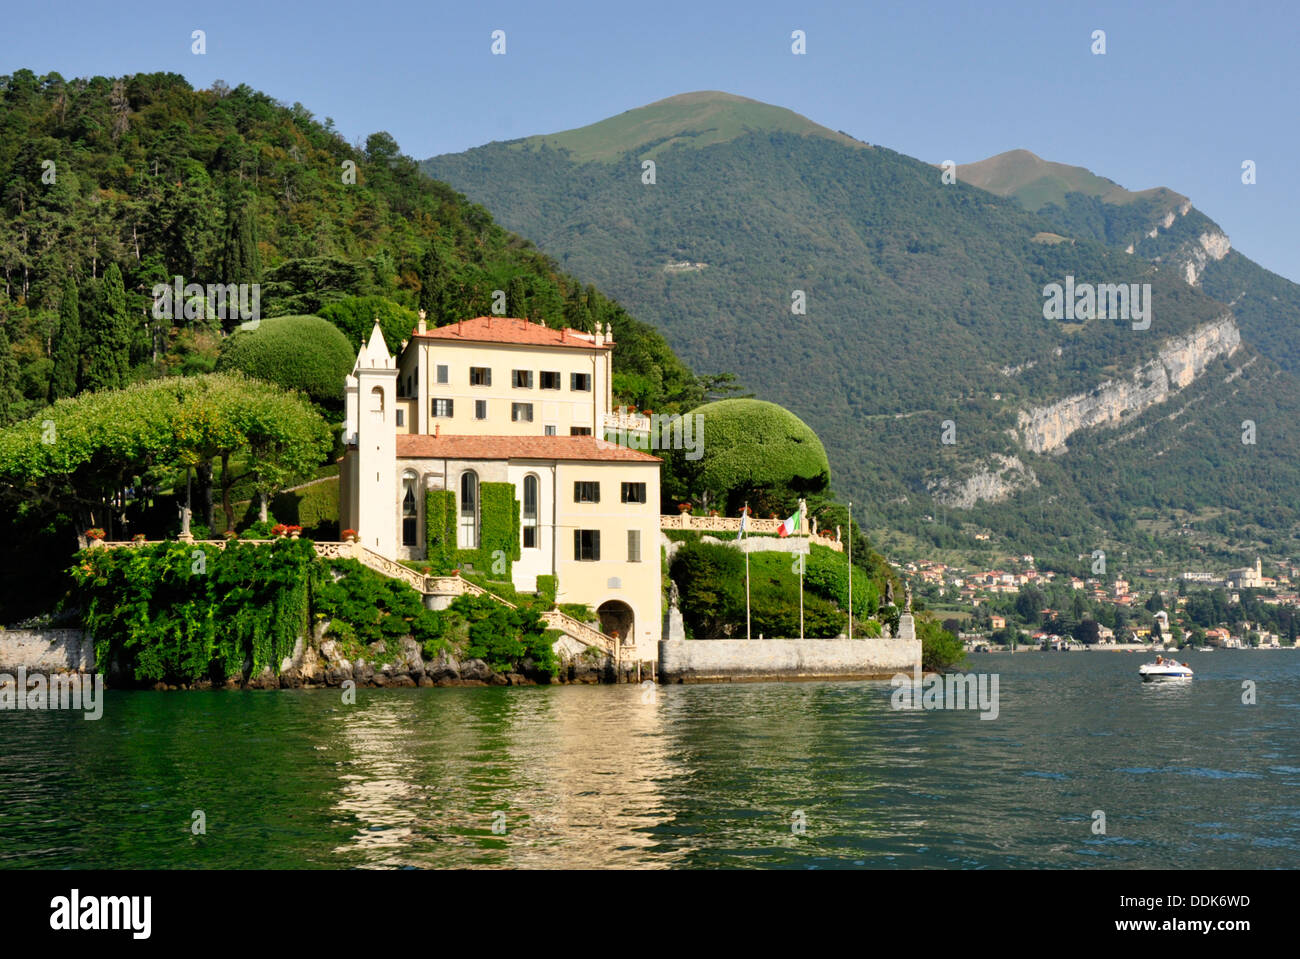 Italy - Lake Como - Lenno - Villa del Balbianello - 18th cent - famous for its gardens -  museum - romantic location - sunlight Stock Photo